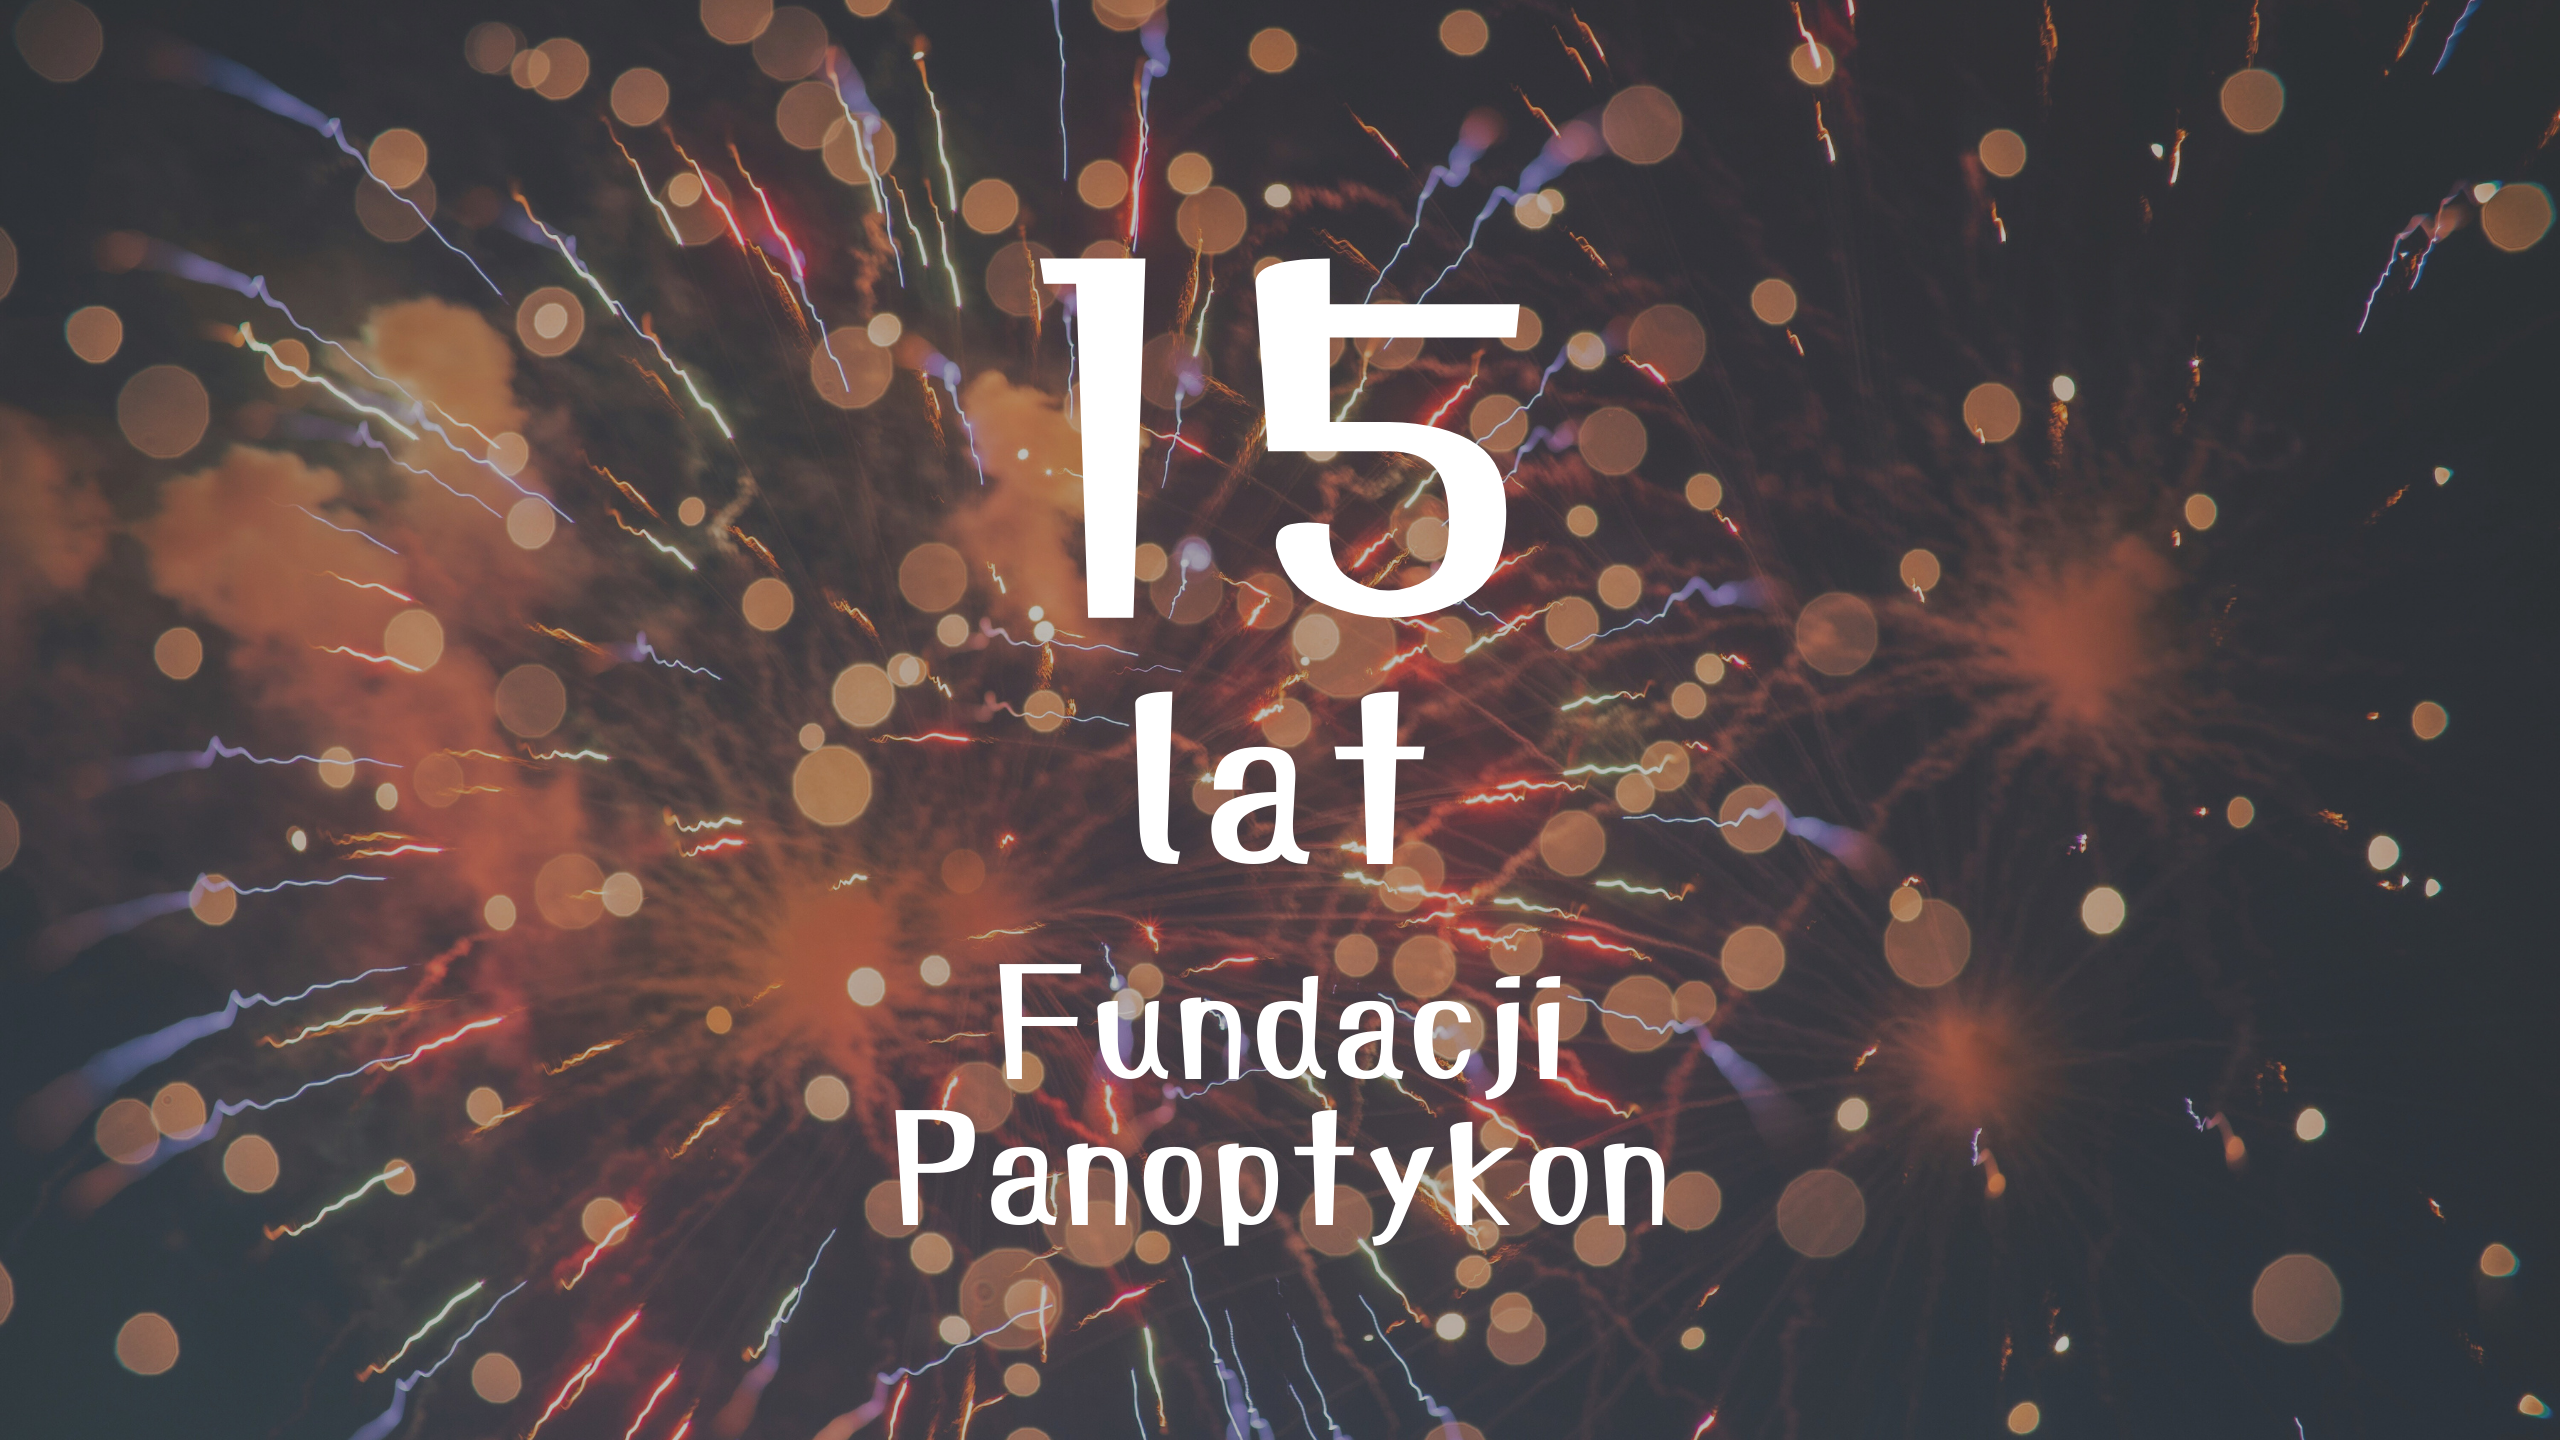 Grafika z napisem "15 lat Fundacji Panoptykon" na tle fajerwerków